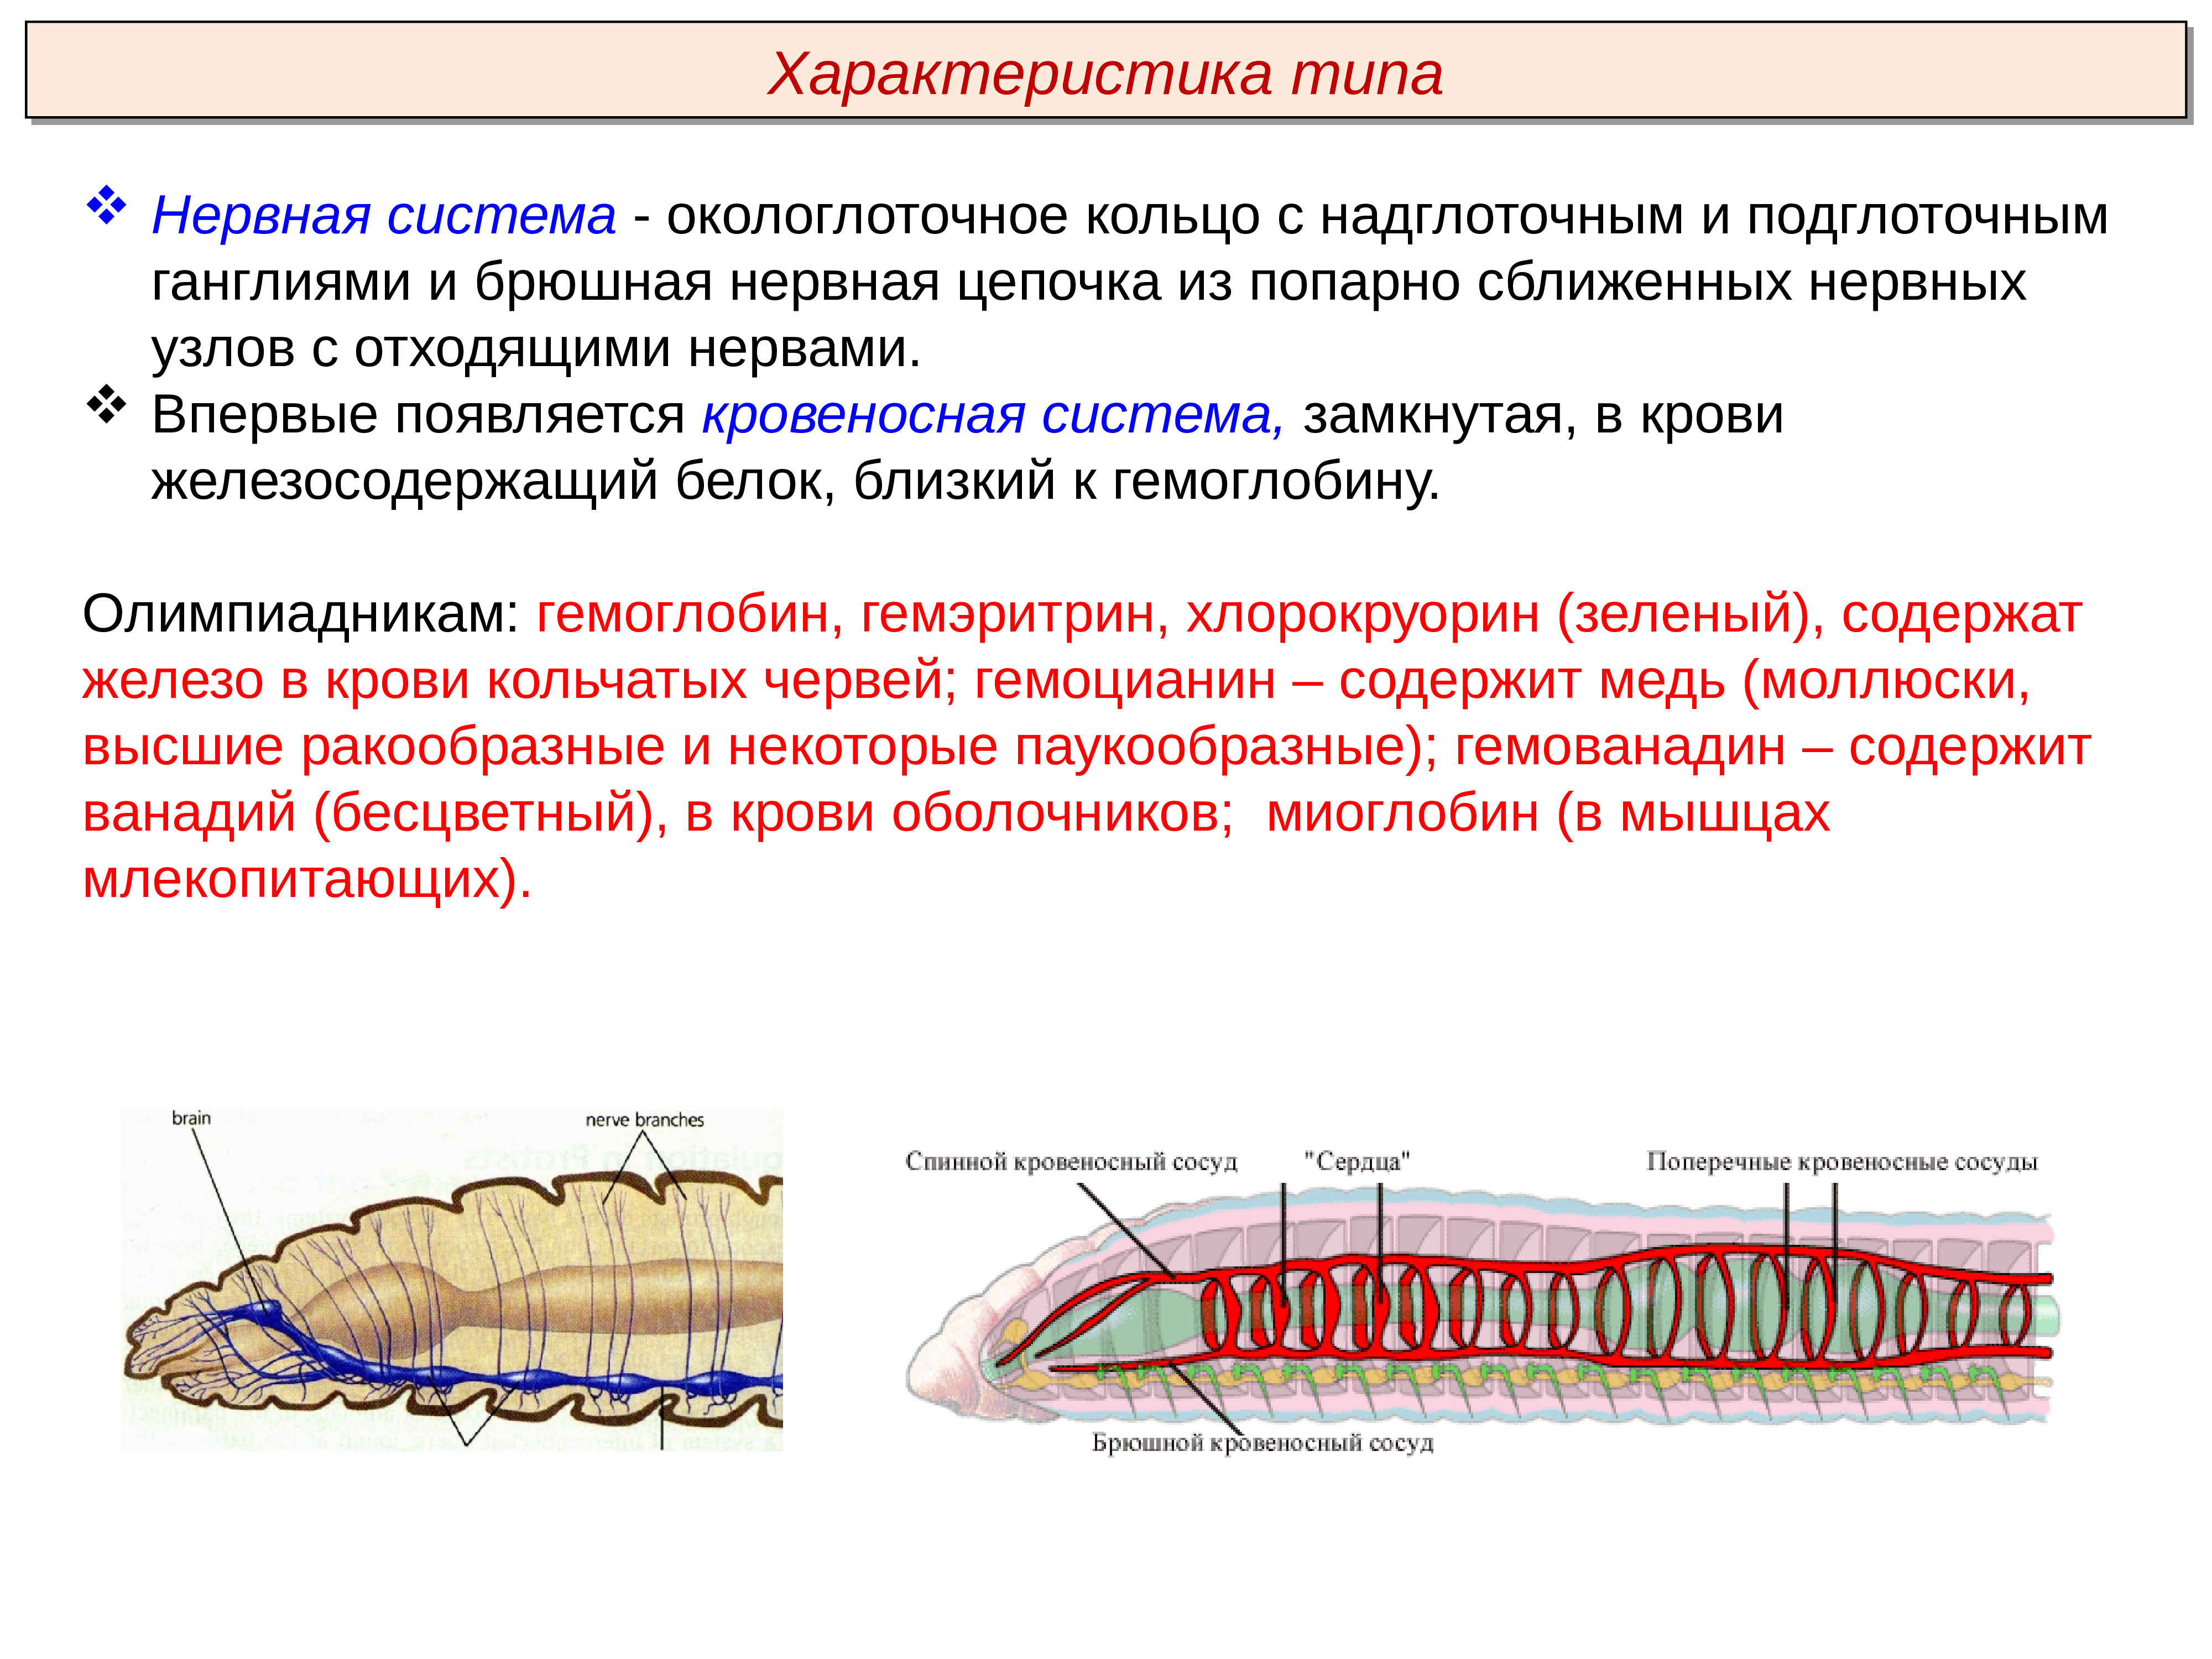 К группе кольчатых червей относятся. Тип кольчатые черви Annelida. Кольчатые черви нервная система окологлоточное кольцо. Нервная система кольчатых червей 7 класс. Кольчатые черви строение нервной системы.